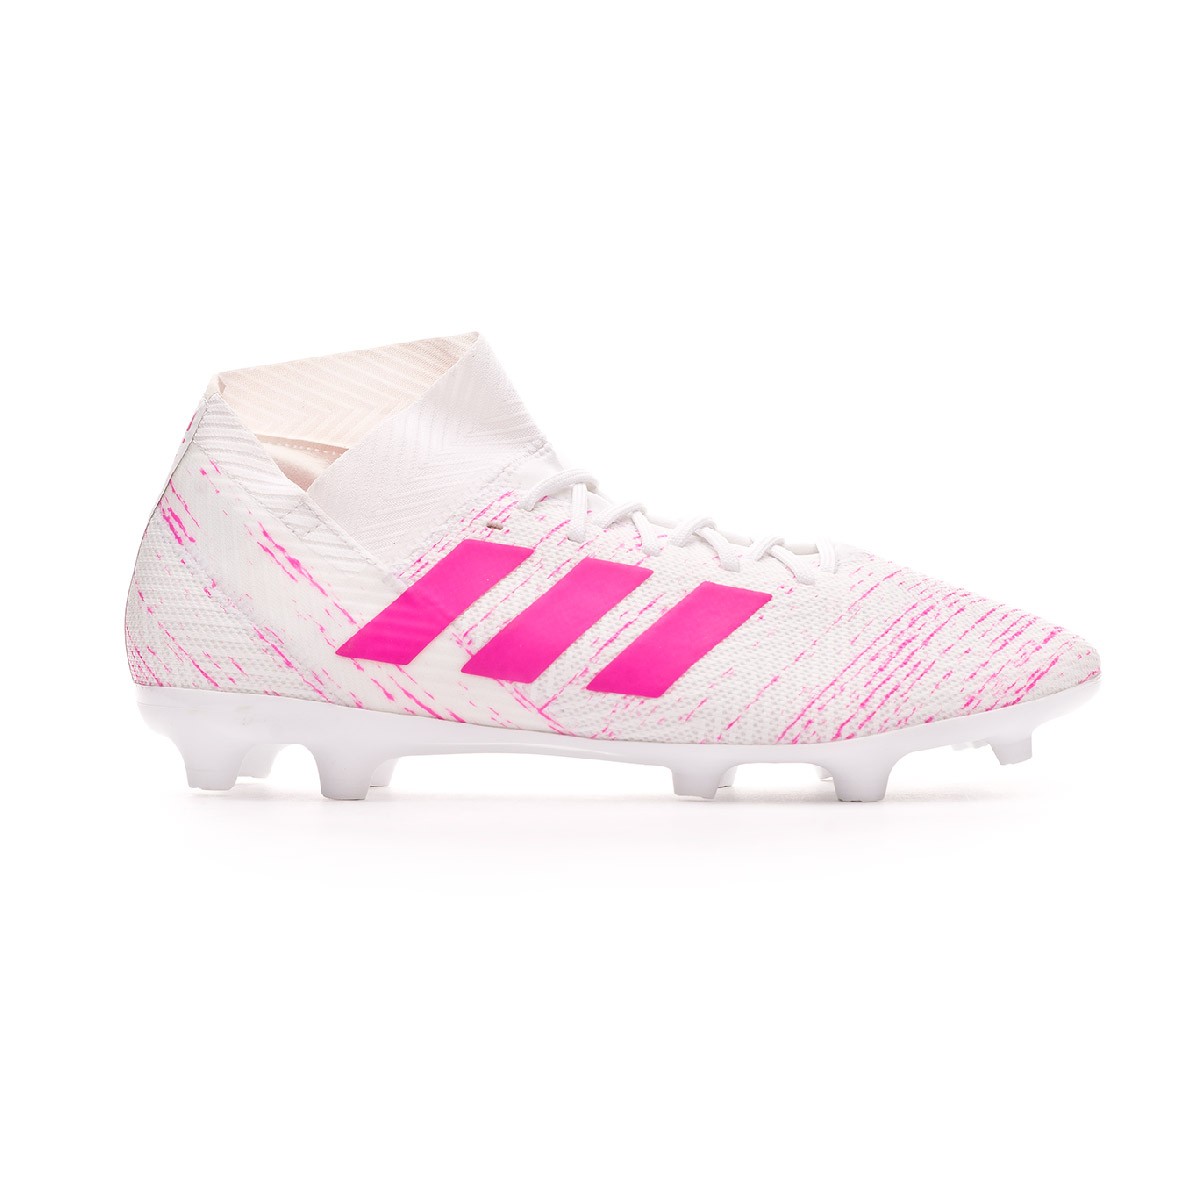 adidas nemeziz 18.3 fg football boots